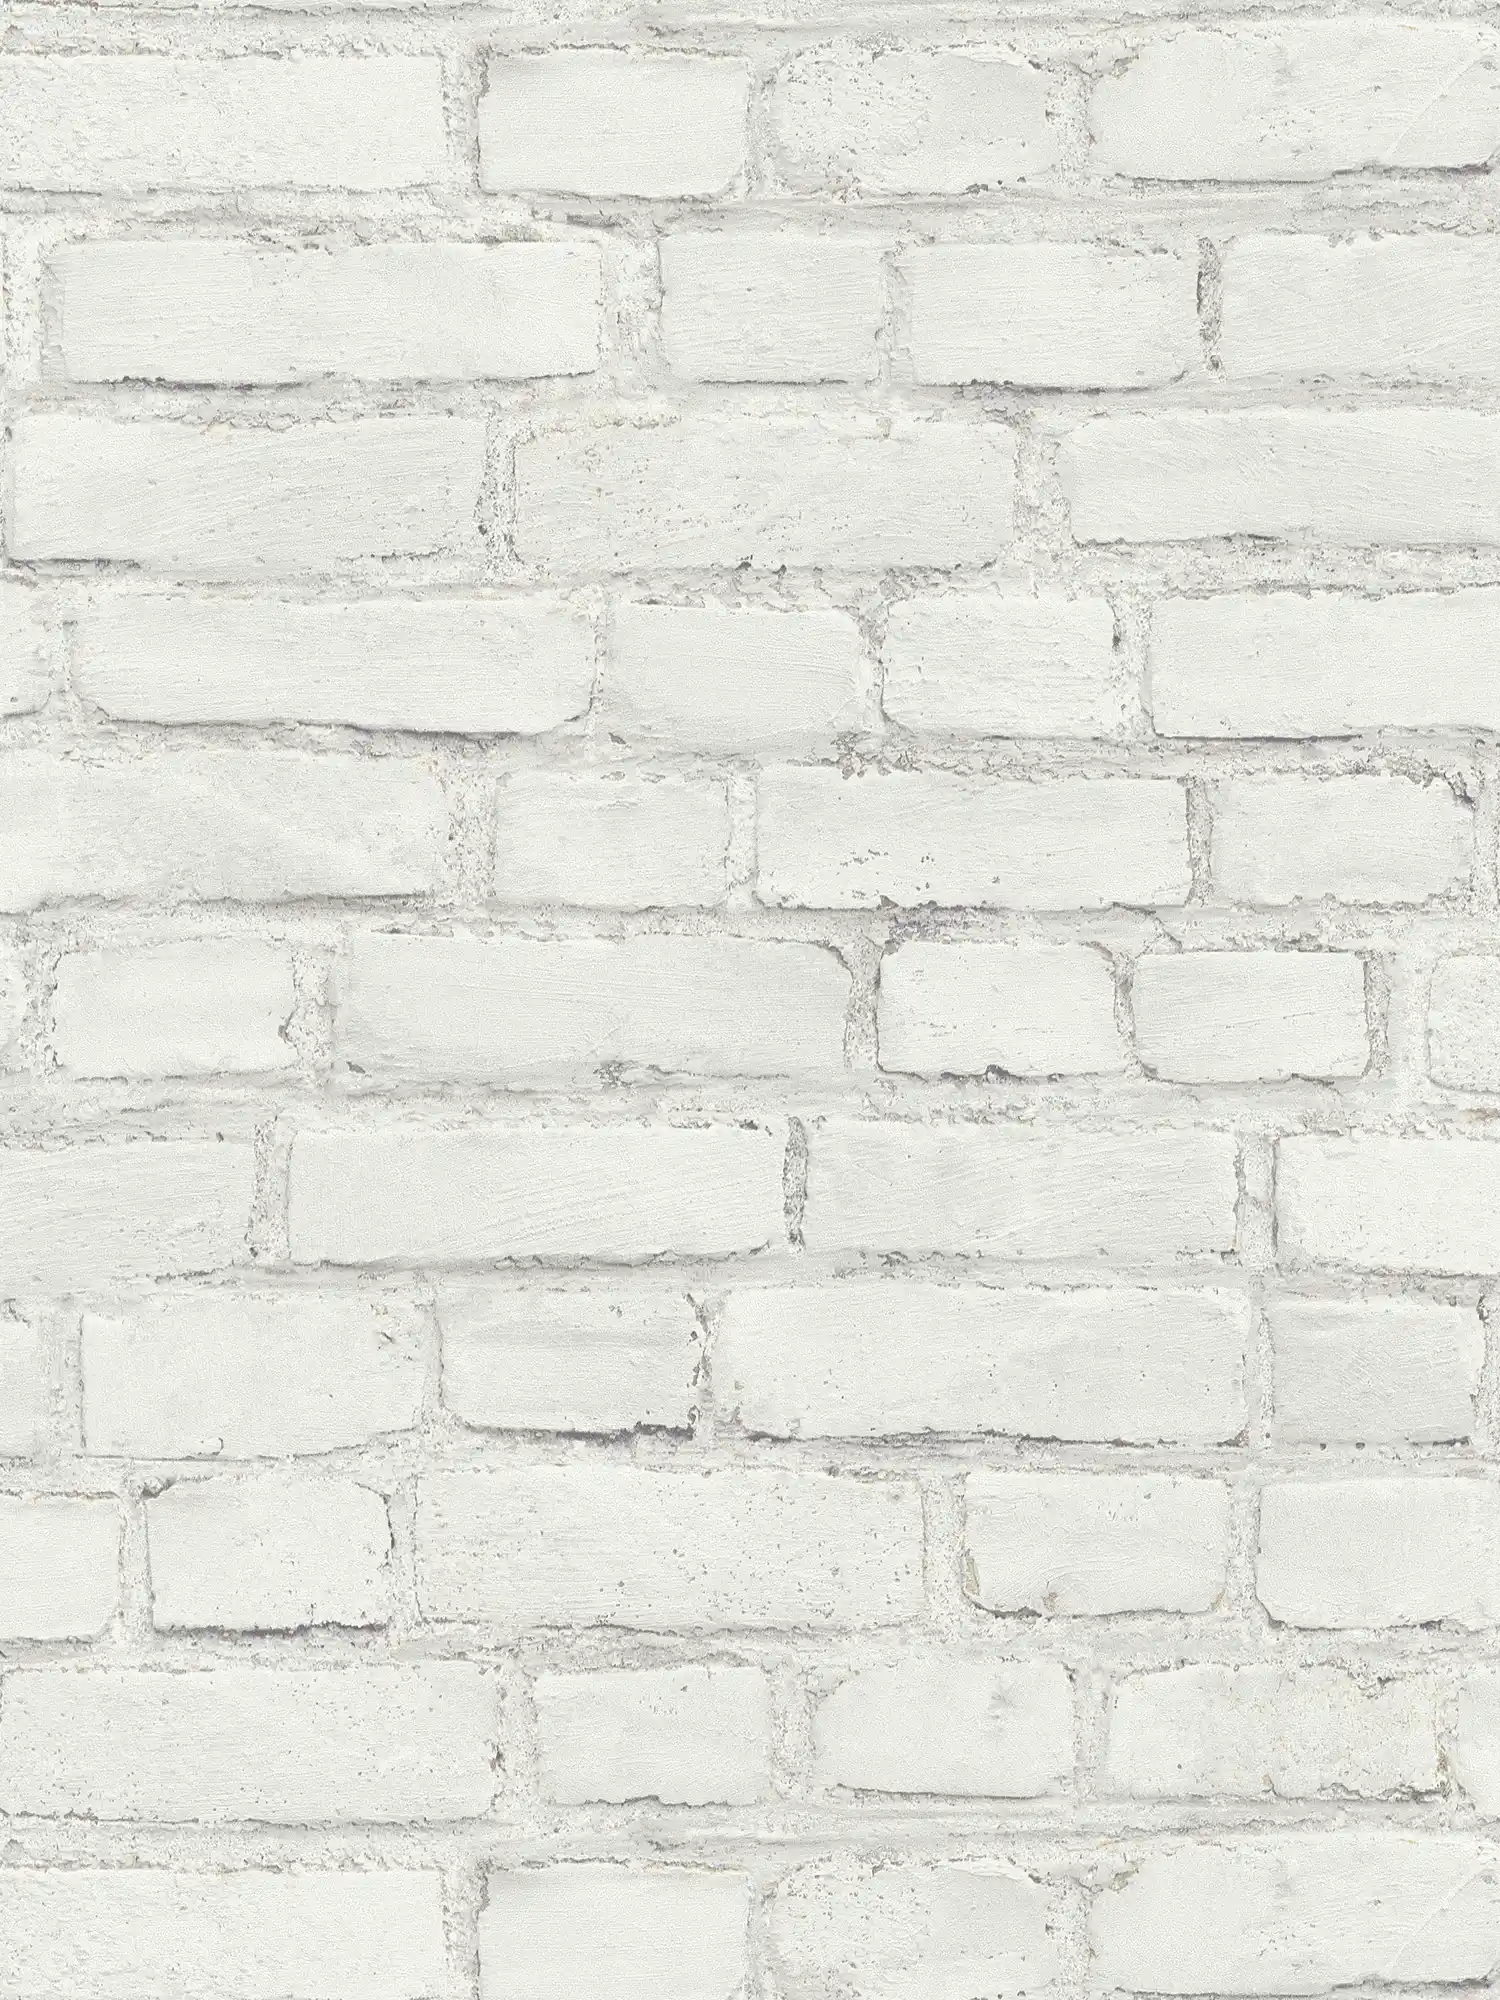         Tapete mit Maueroptik, gestrichene Backsteinwand – Weiß, Grau
    